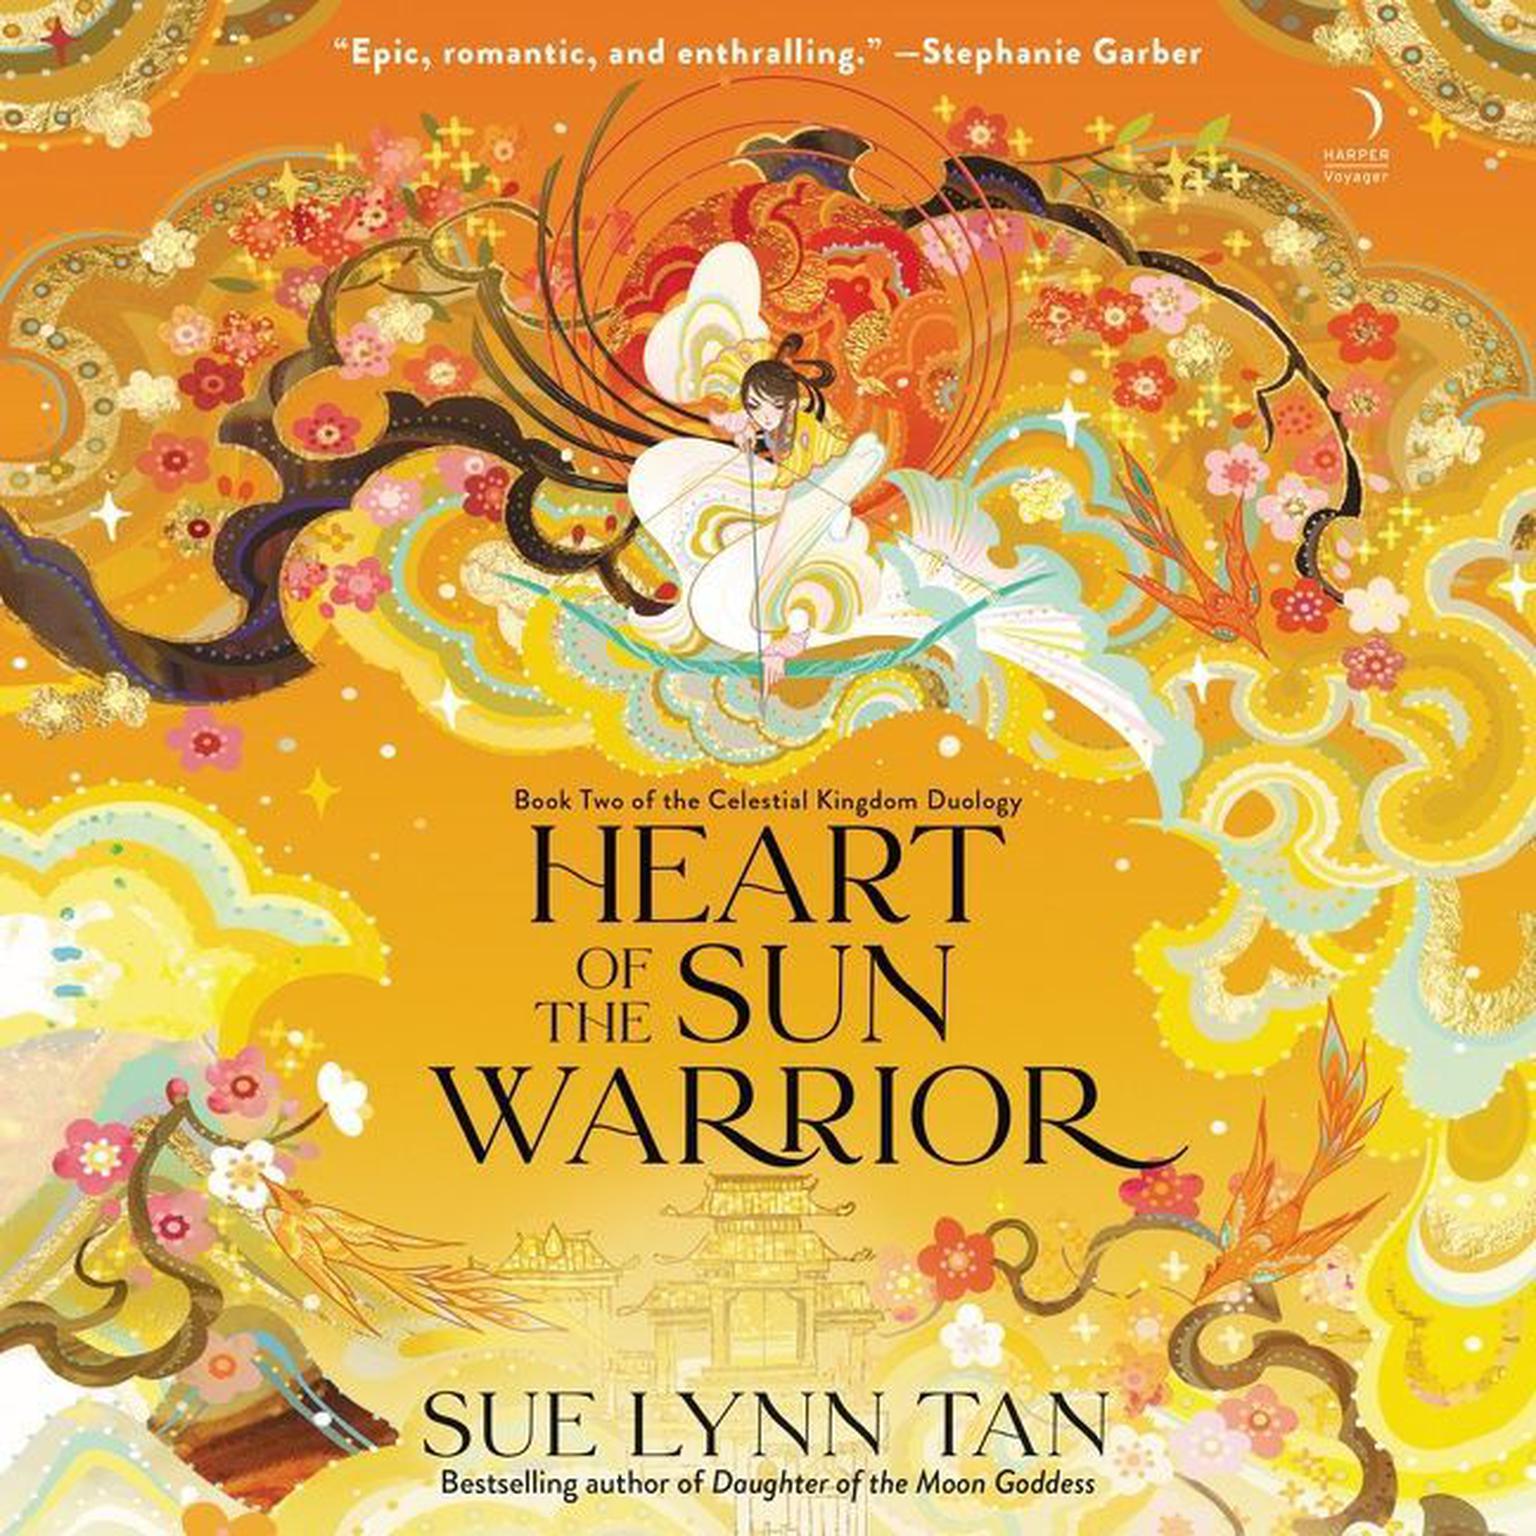 Heart of the Sun Warrior: A Novel Audiobook, by Sue Lynn Tan